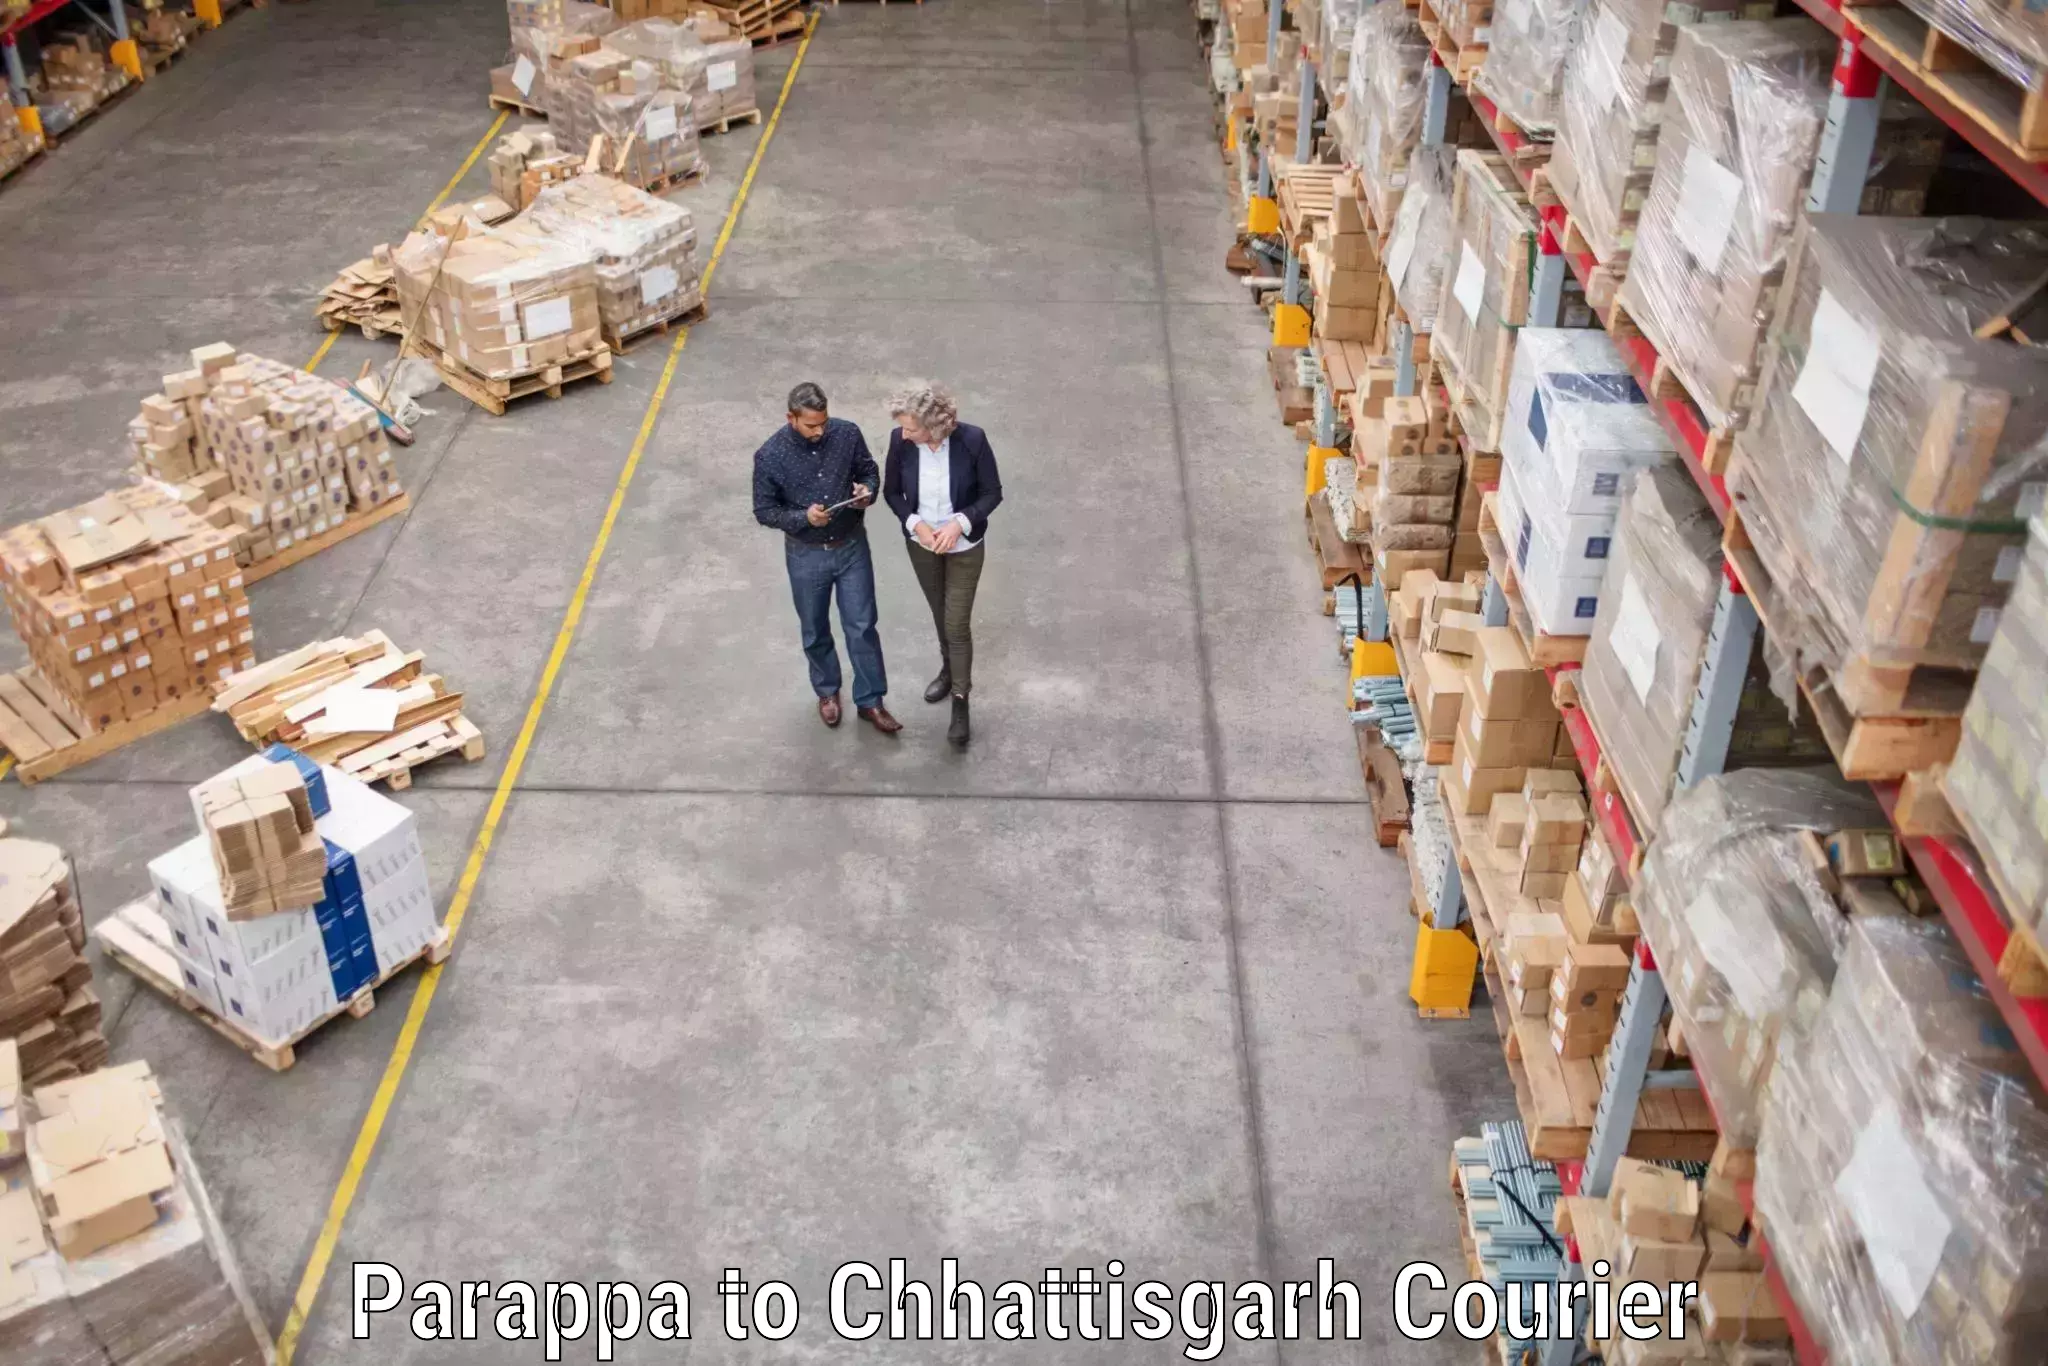 Furniture transport company Parappa to Chhattisgarh